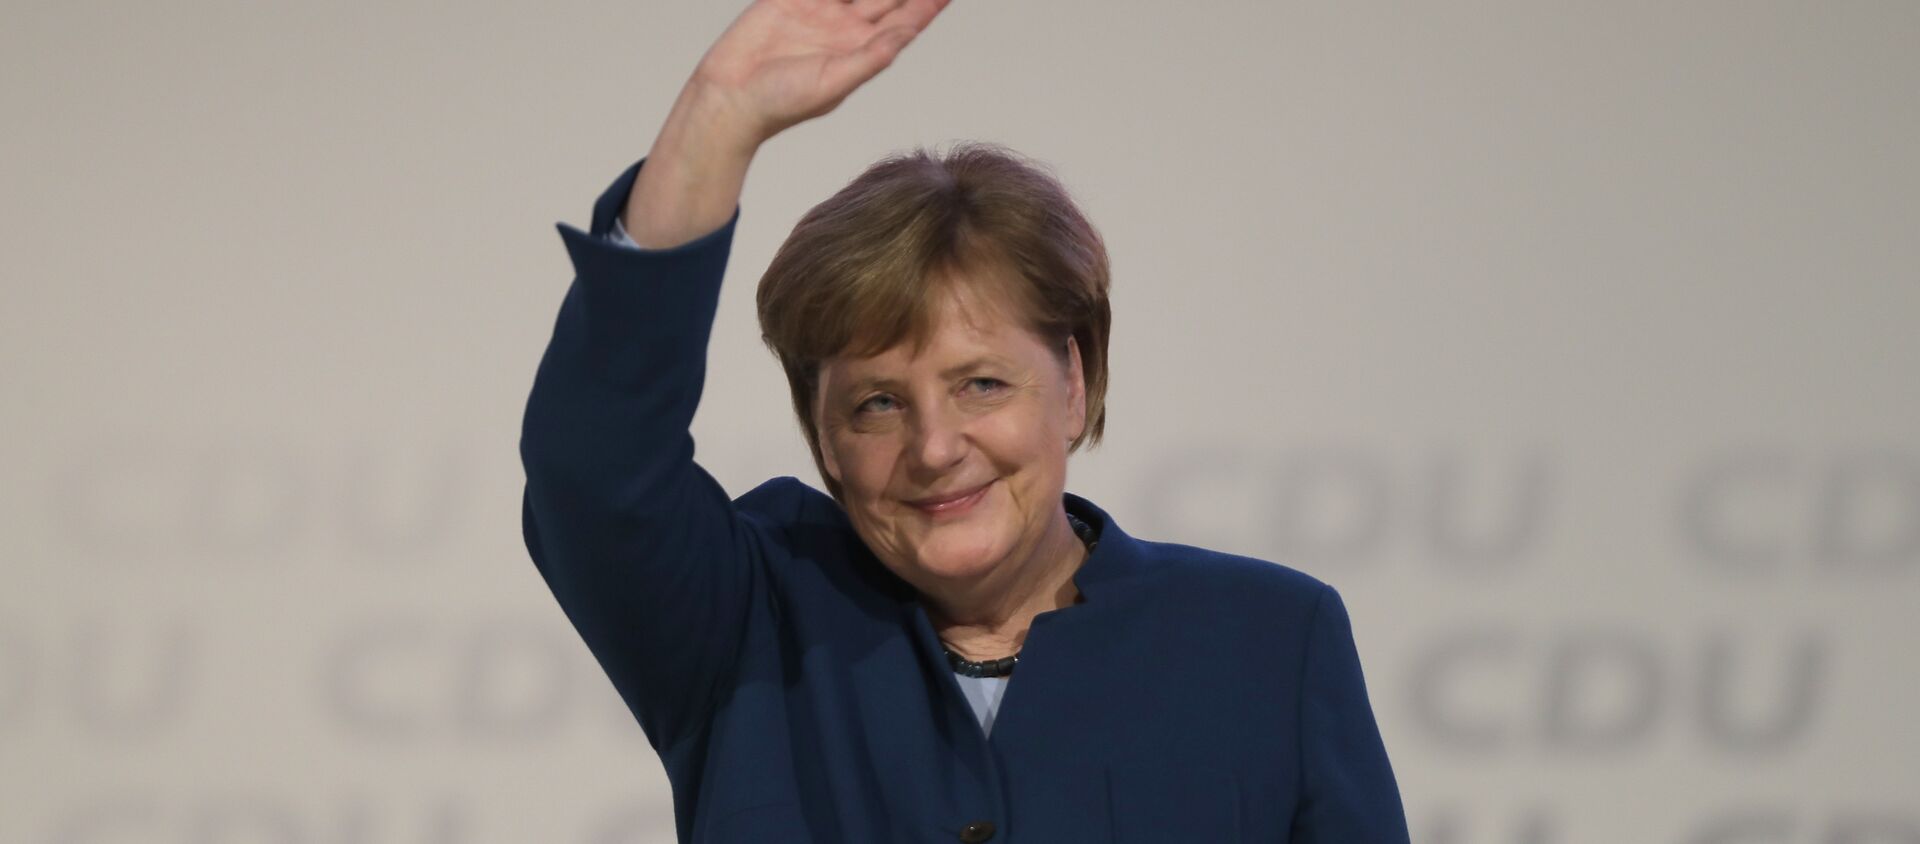 Merkel CDU lideri olarak son konuşmasını yaptı - Sputnik Türkiye, 1920, 28.05.2019